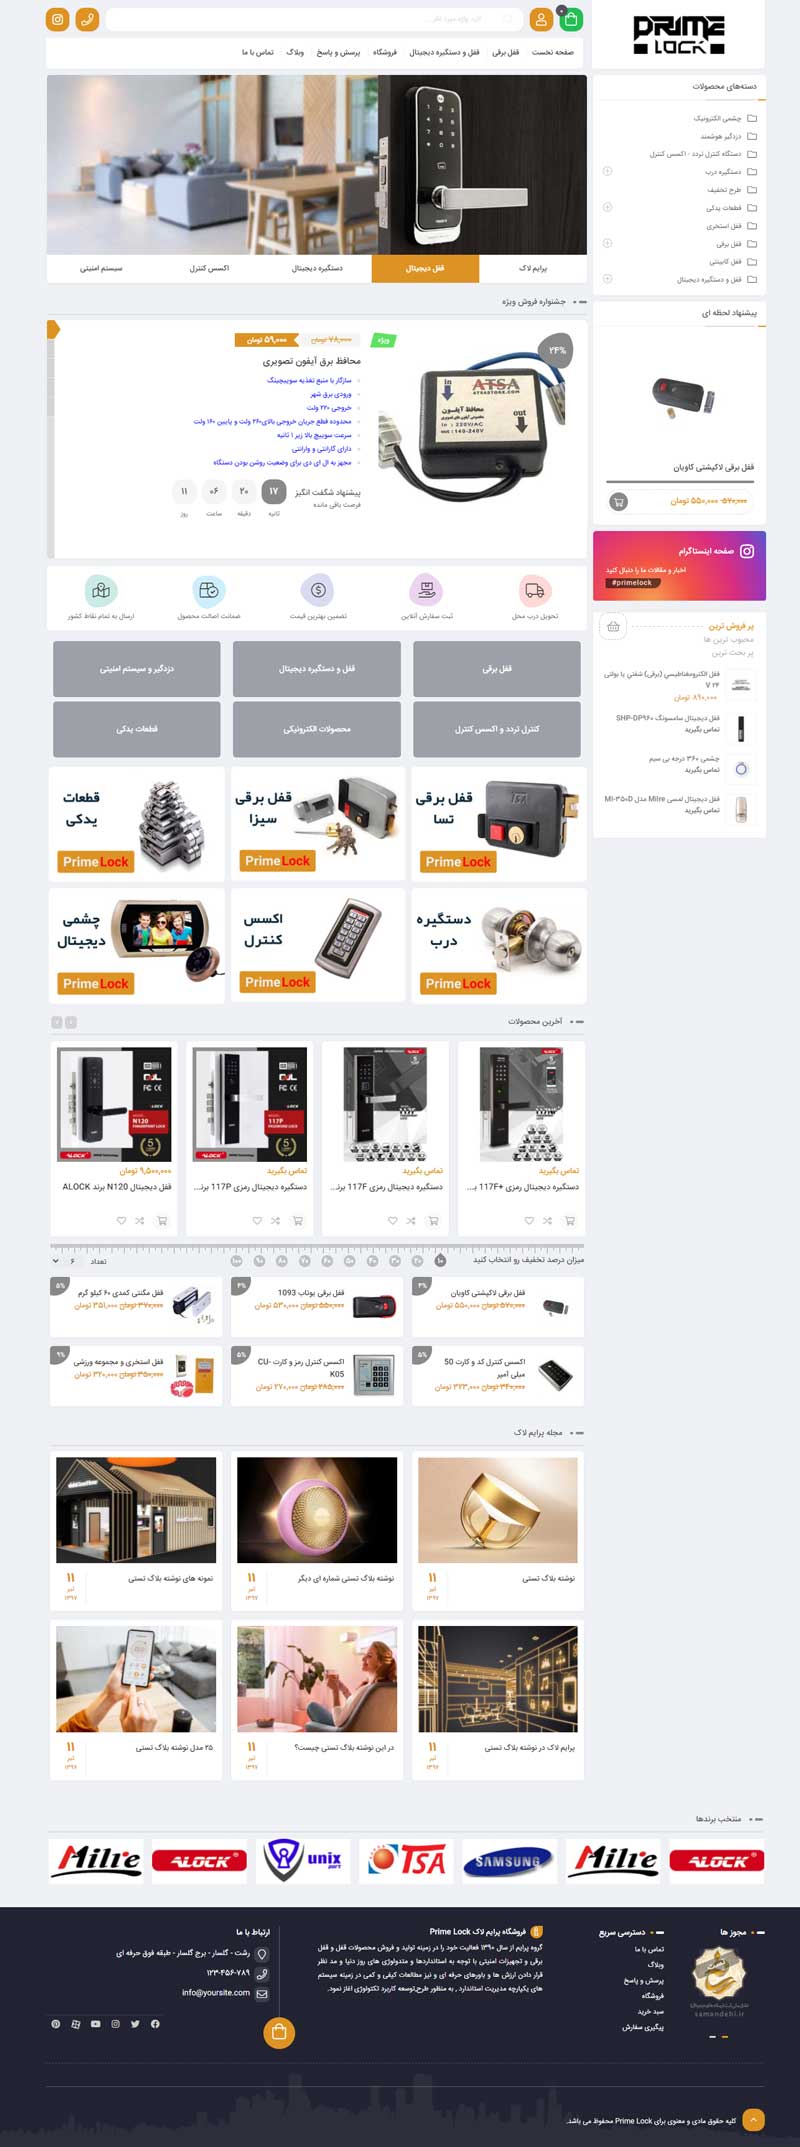 طراحی سایت فروشگاهی ابزار